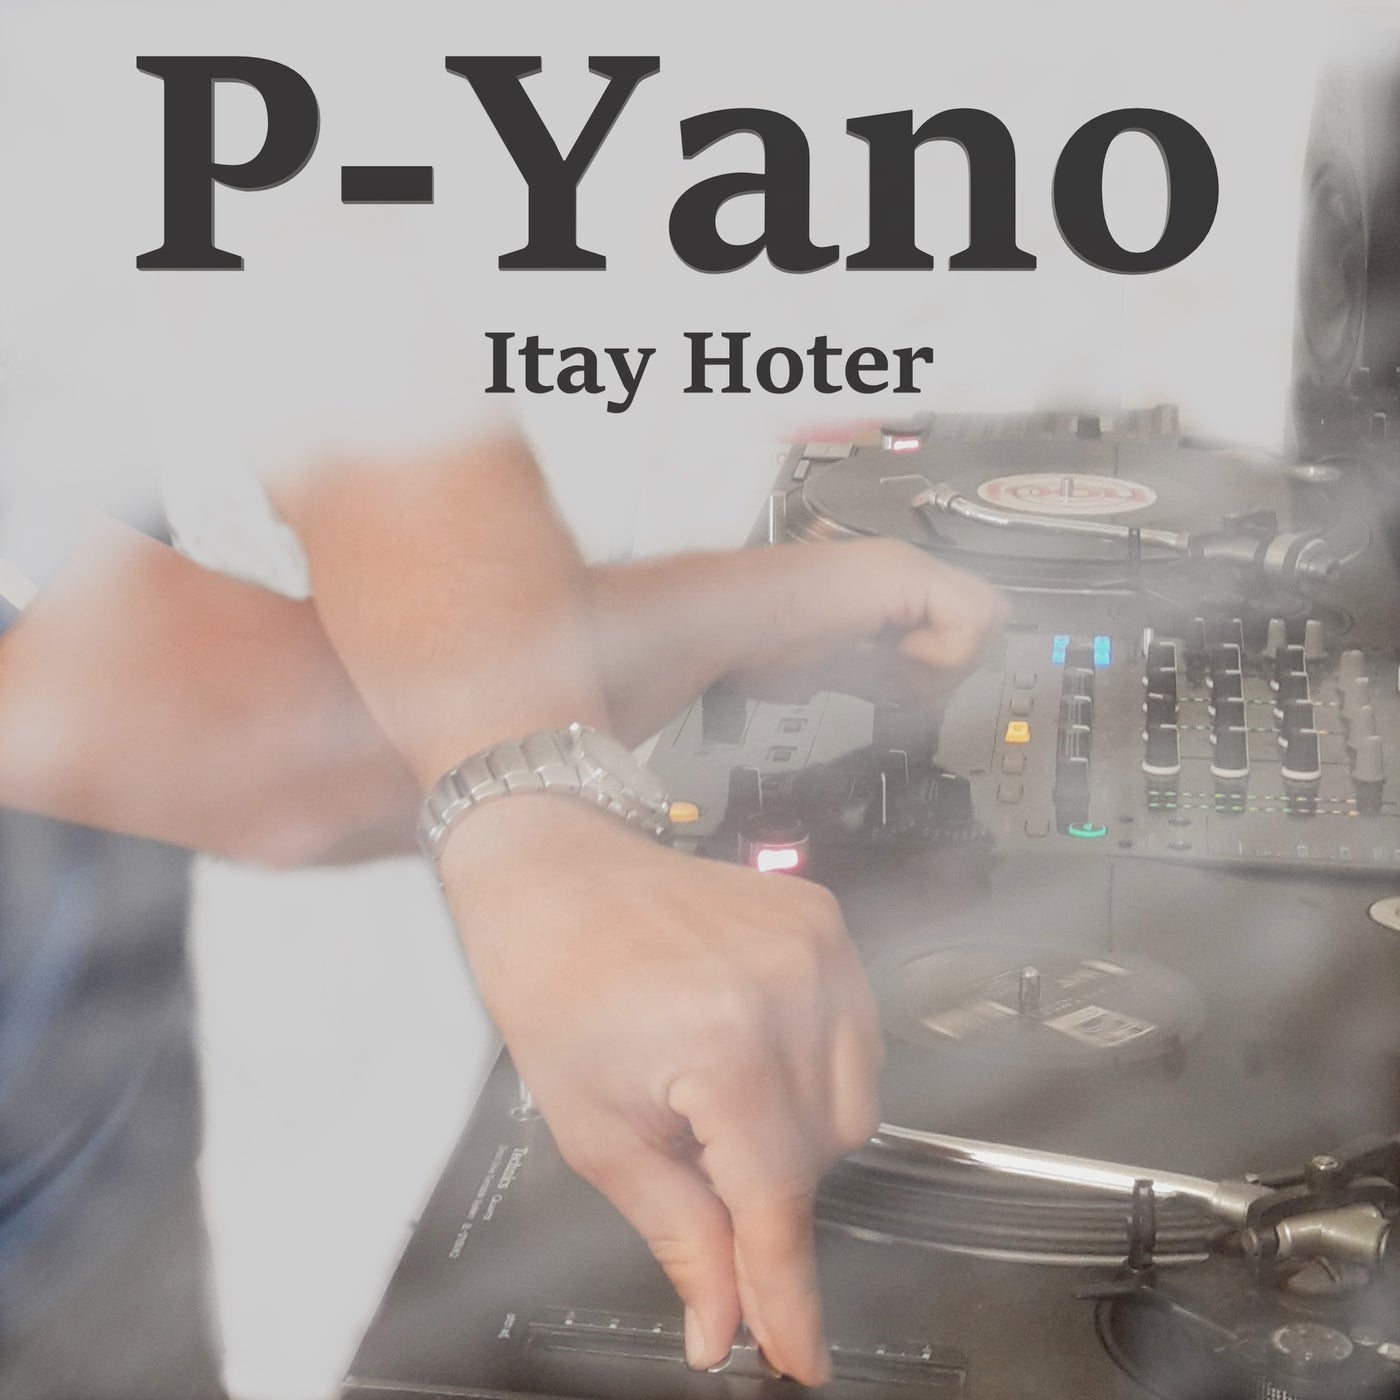 P-Yano